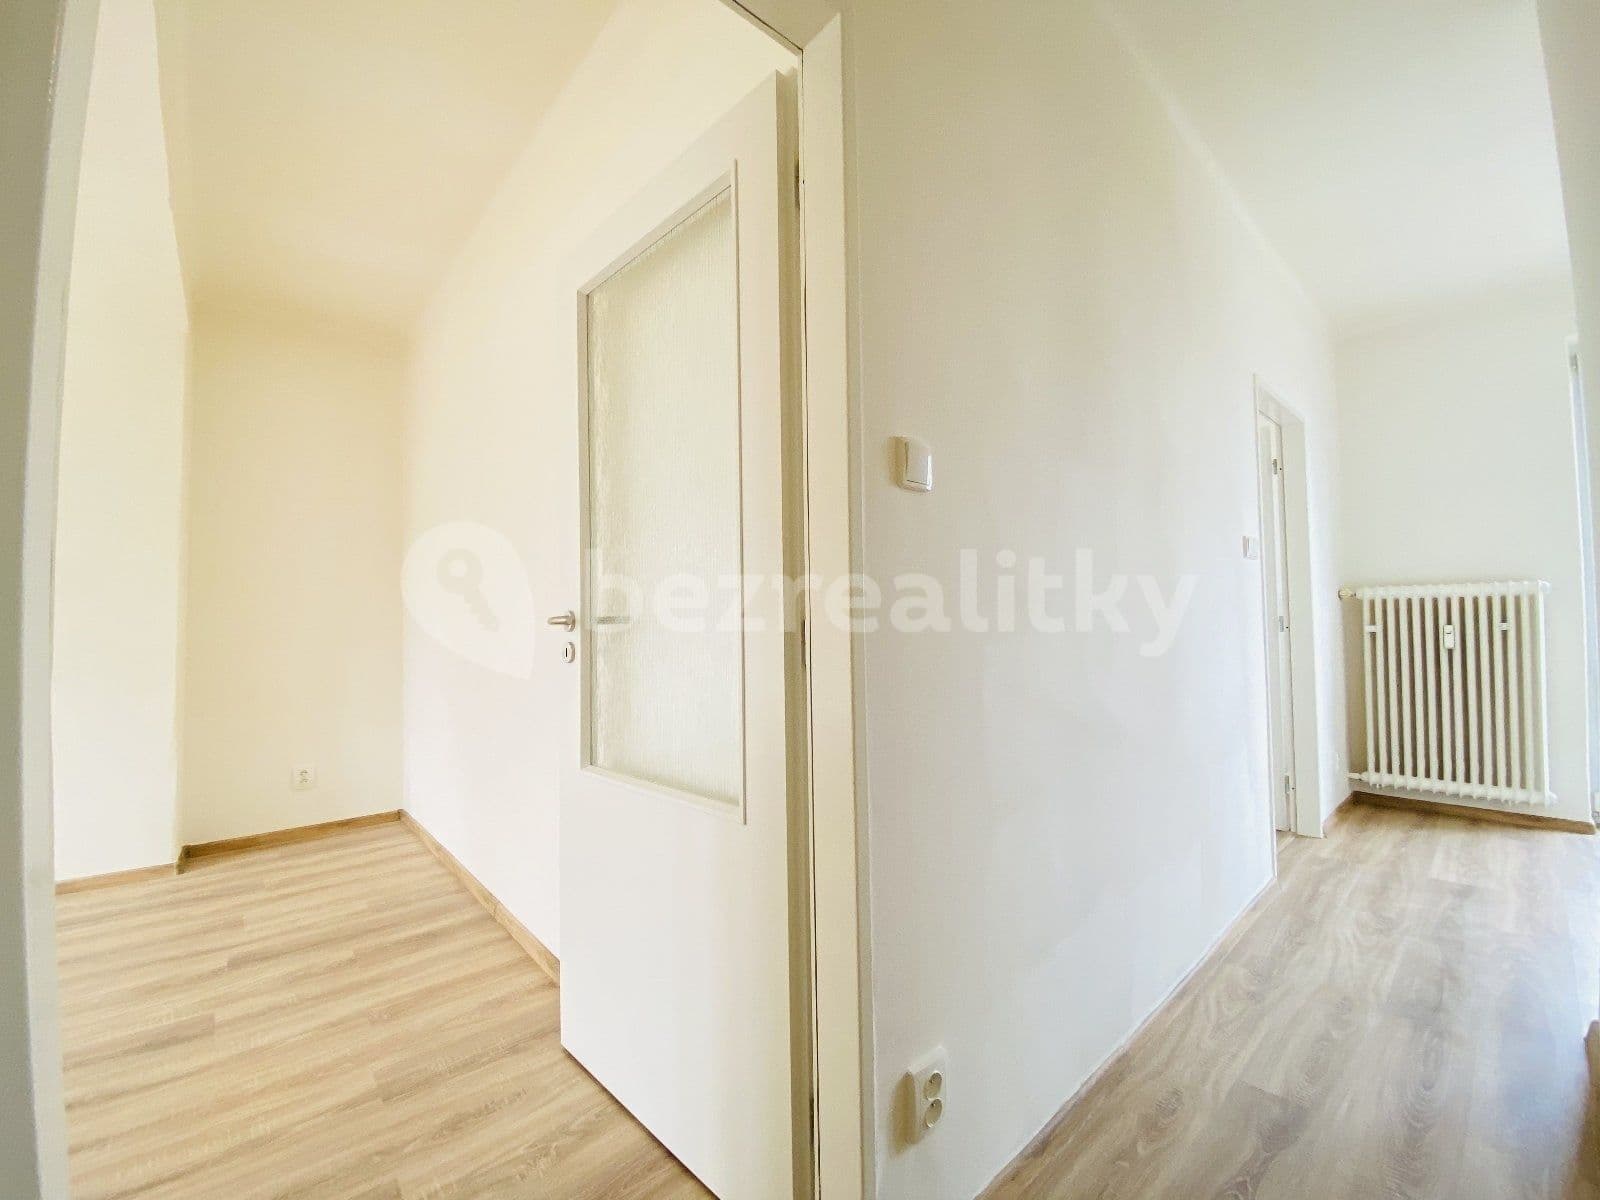 2 bedroom flat to rent, 50 m², U Hájenky, Ostrava, Moravskoslezský Region